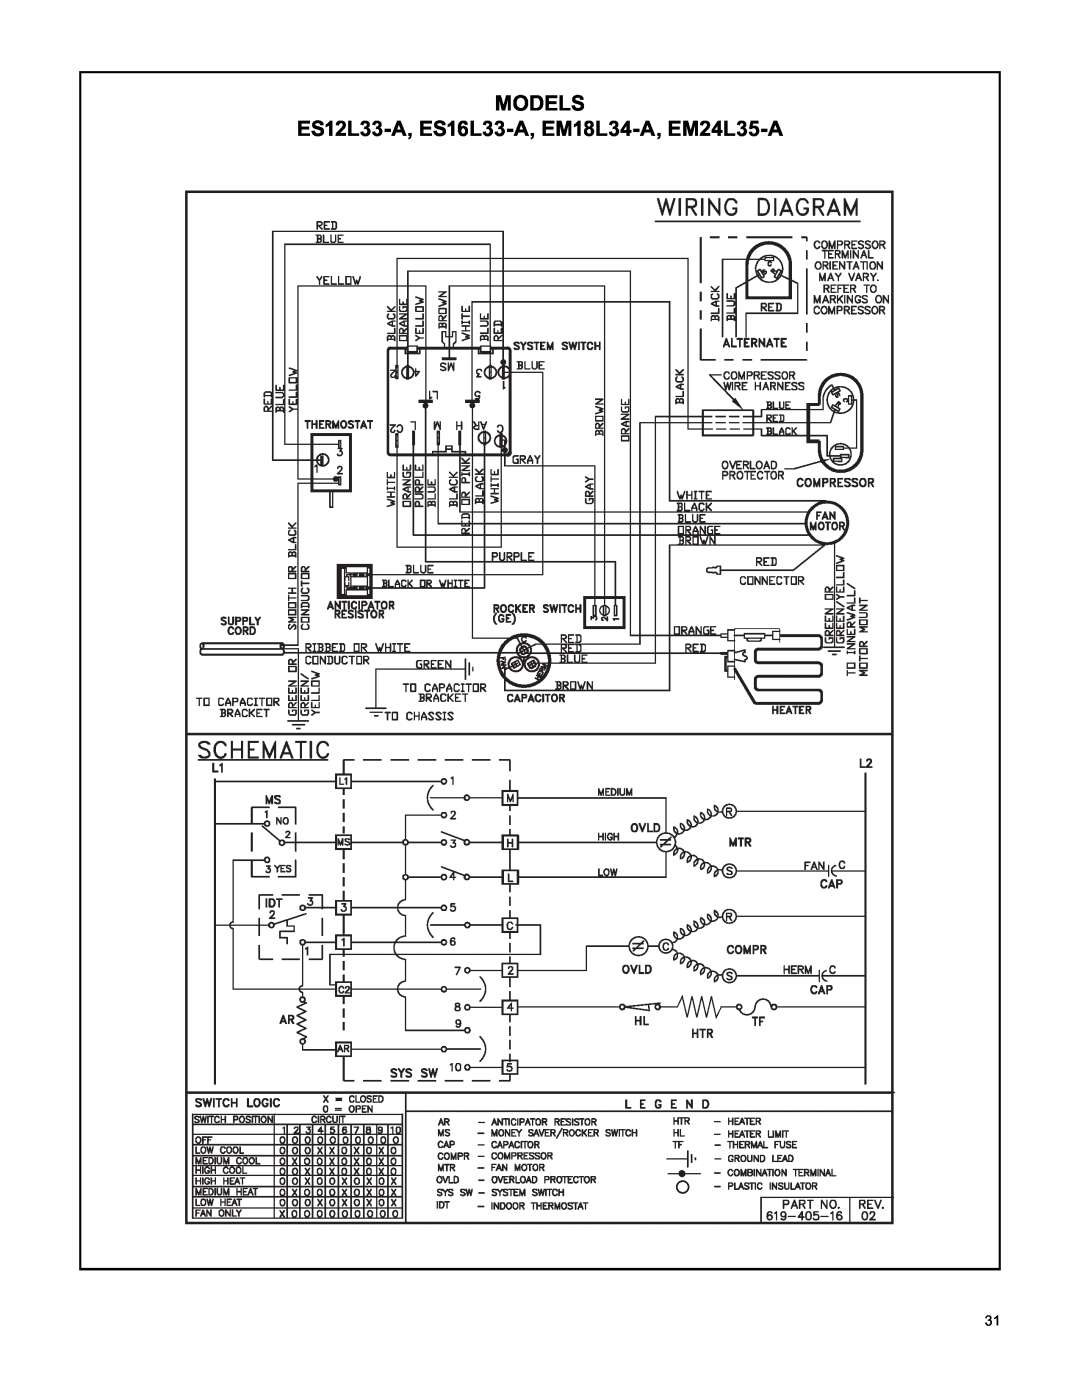 Friedrich RAC-SVC-06 service manual ES12L33-A, ES16L33-A, EM18L34-A, EM24L35-A, Models 